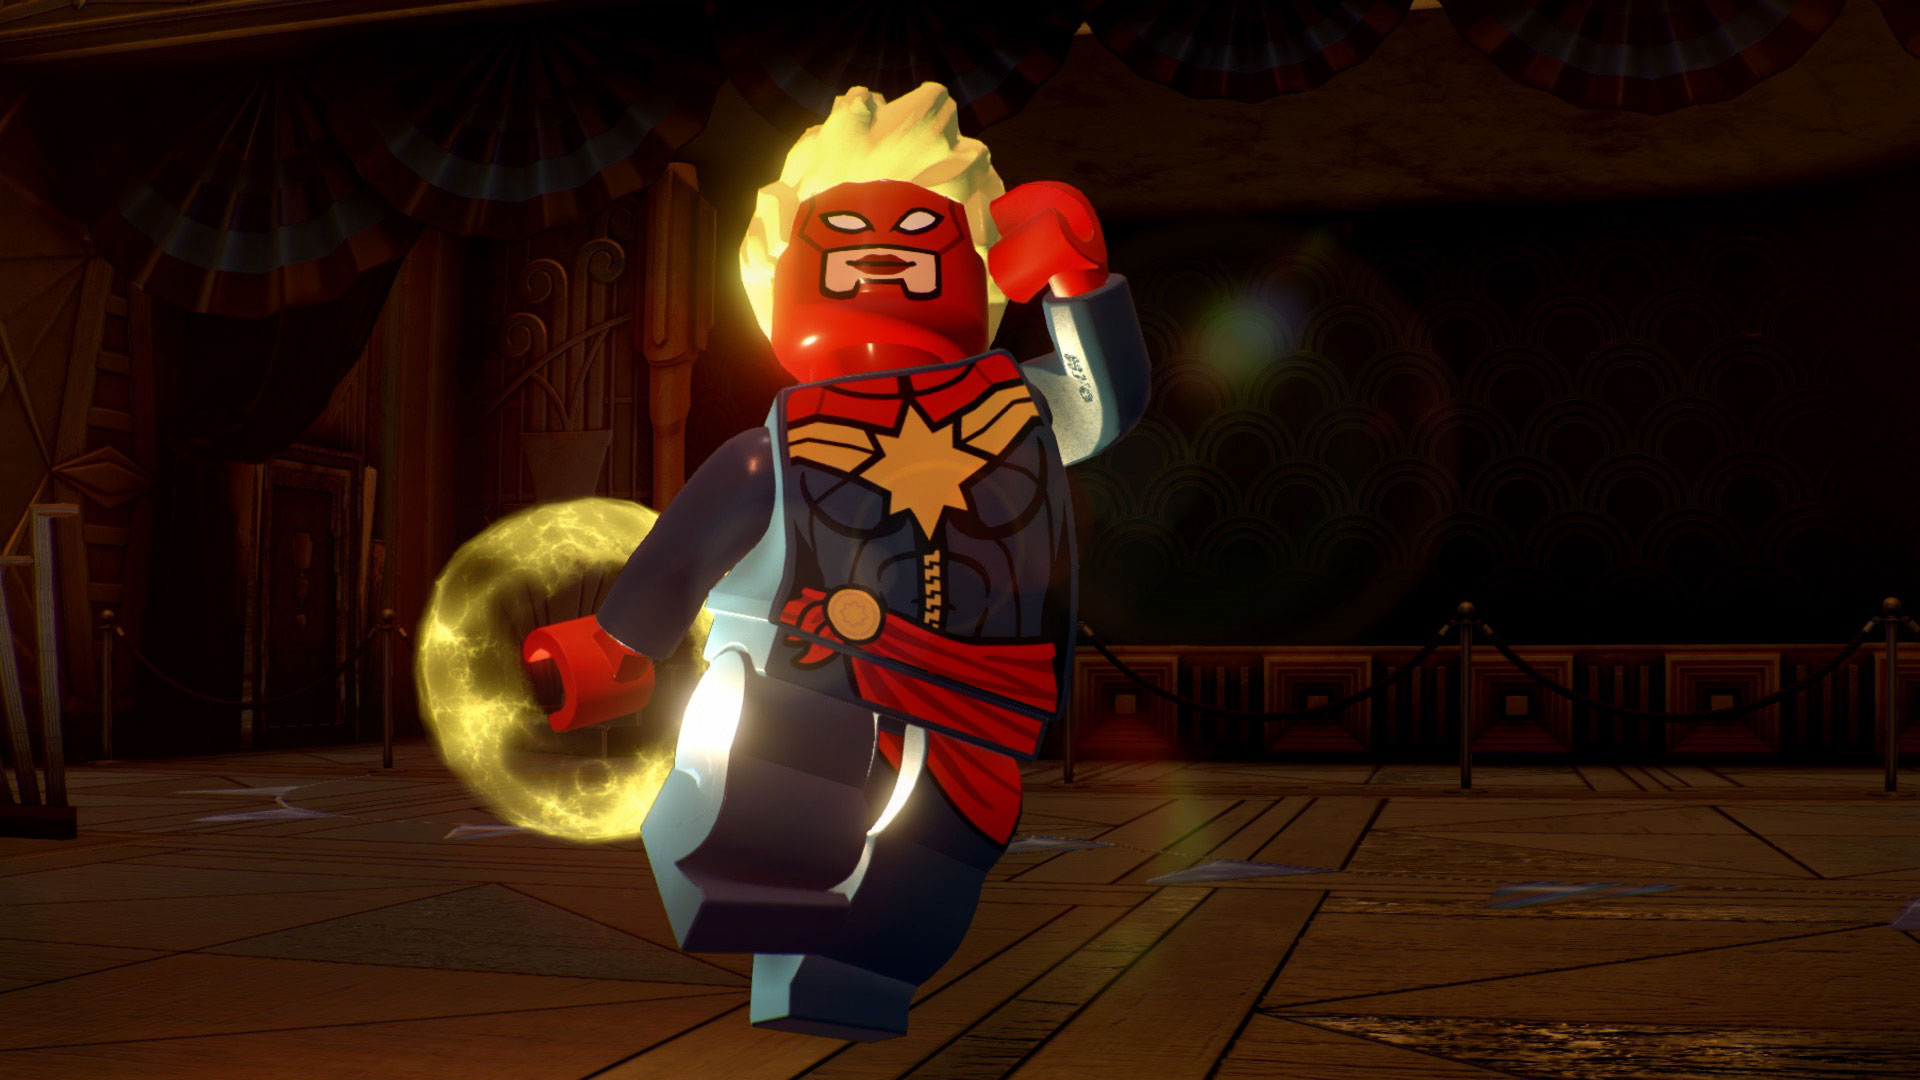 himmel pasta Ved en fejltagelse LEGO® Marvel Super Heroes 2 on Steam